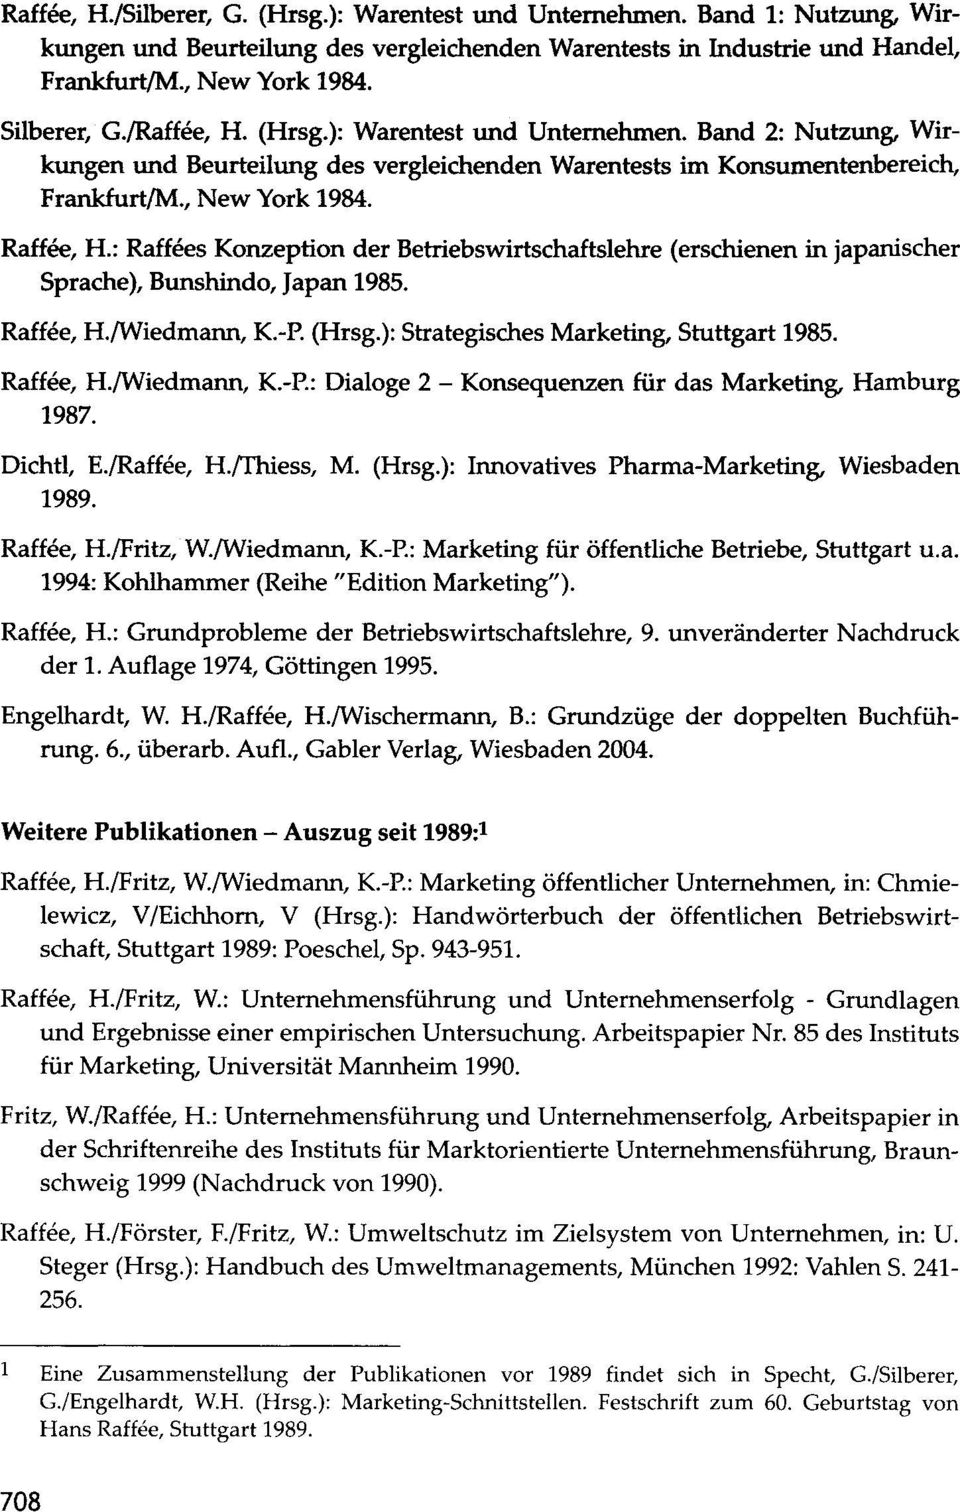 : Raffees Konzeption der Betriebswirtschaftslehre (erschienen in japanischer Sprache), Bunshindo, Japan 1985. Raffee, H./Wiedmann, K.-P. (Hrsg.): Strategisches Marketing, Stuttgart 1985. Raffee, H./Wiedmann, K.-P.: Dialoge 2 - Konsequenzen für das Marketing, Hamburg 1987.